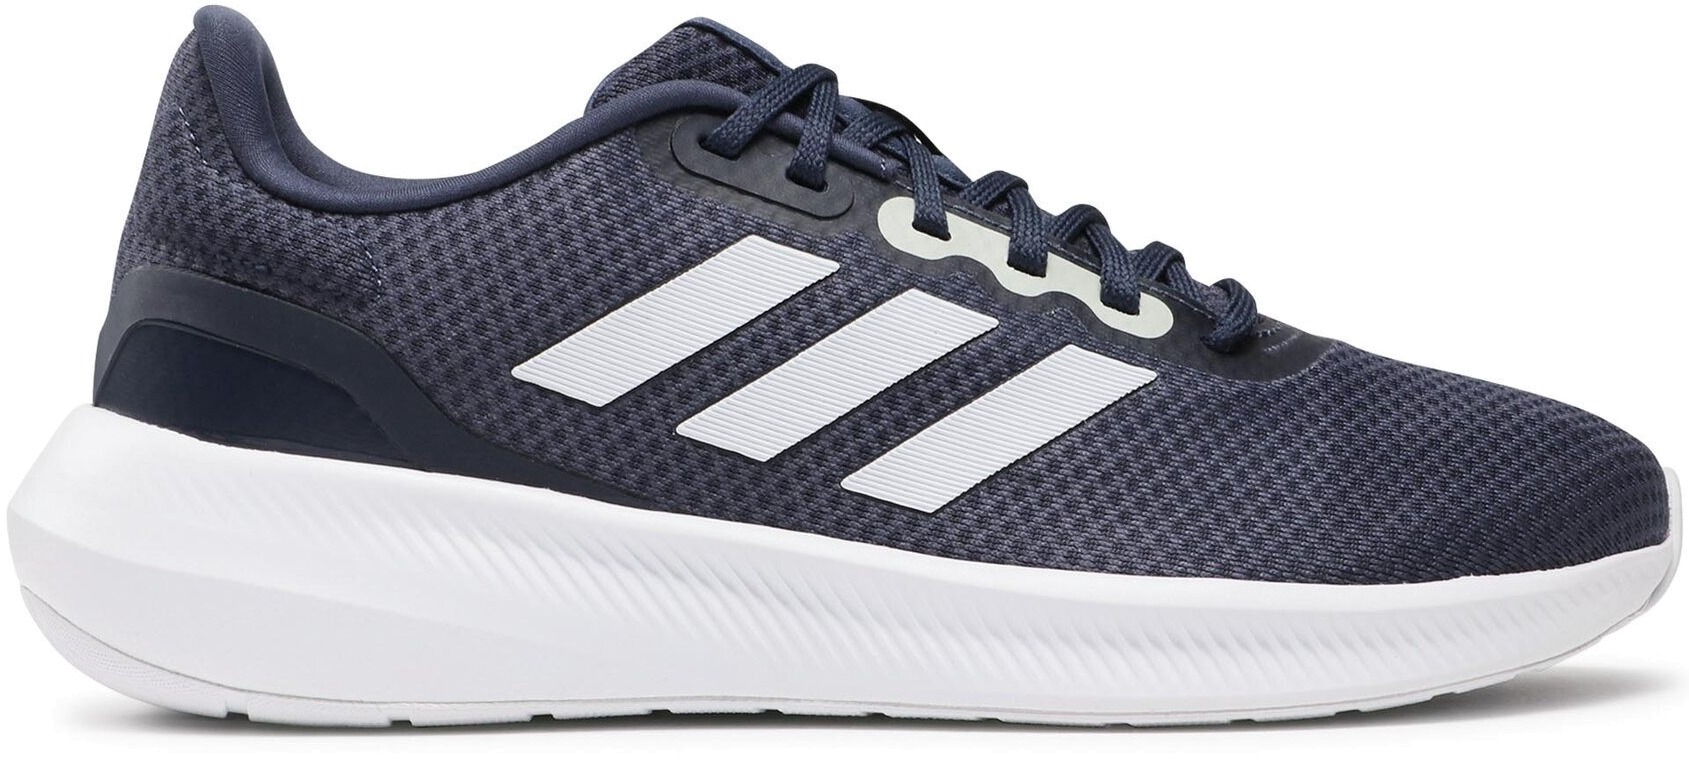 Кроссовки мужские Adidas RUNFALCON 3.0 синие 9 UK - купить в SportPoint, цена на Мегамаркет